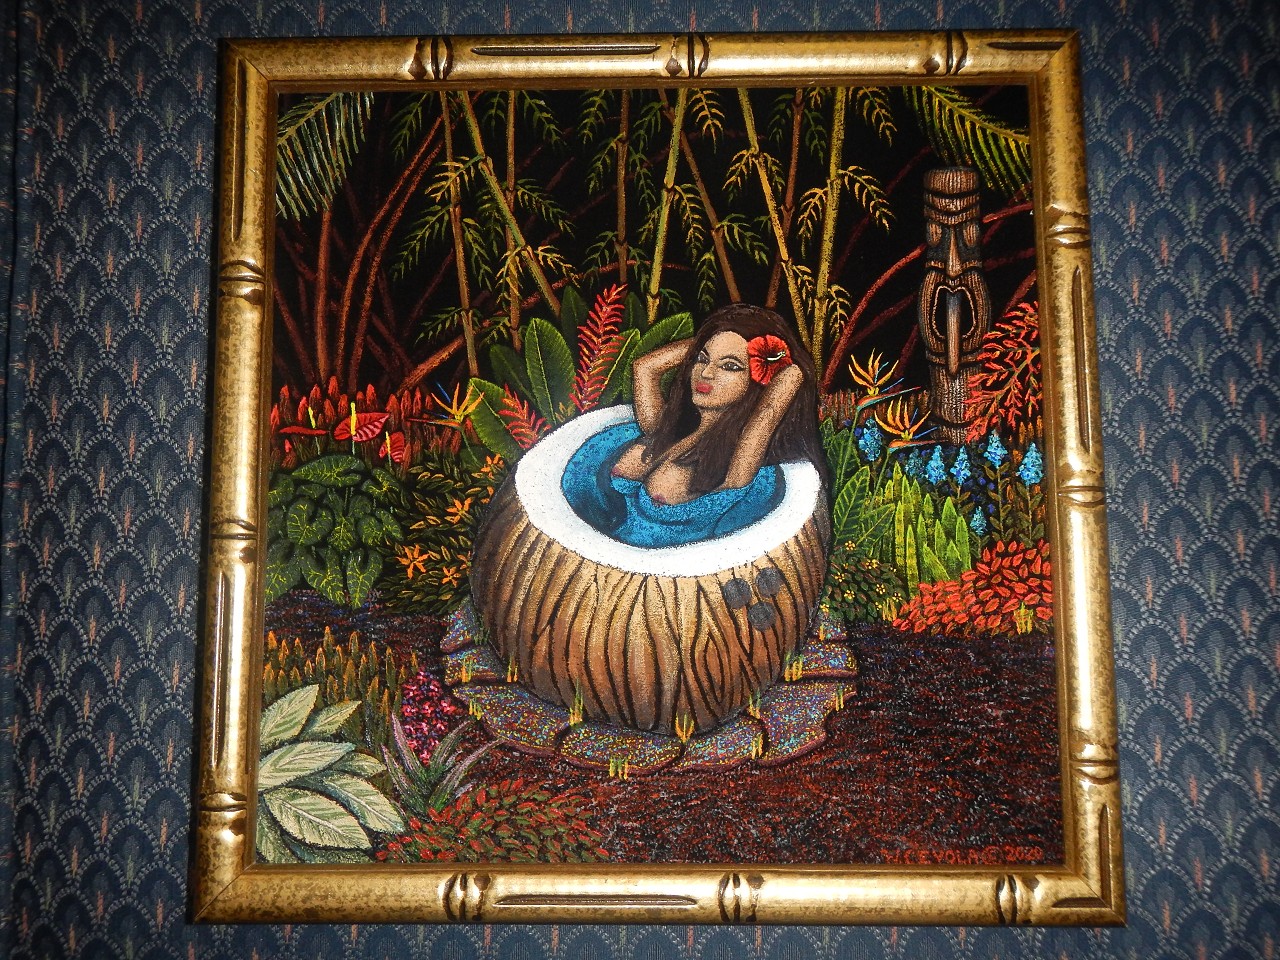 19 Tiki Oasis Wendy Cevola 2020  Hot Tub Hula Girl 13 x 13 Acrylic $500 (26)